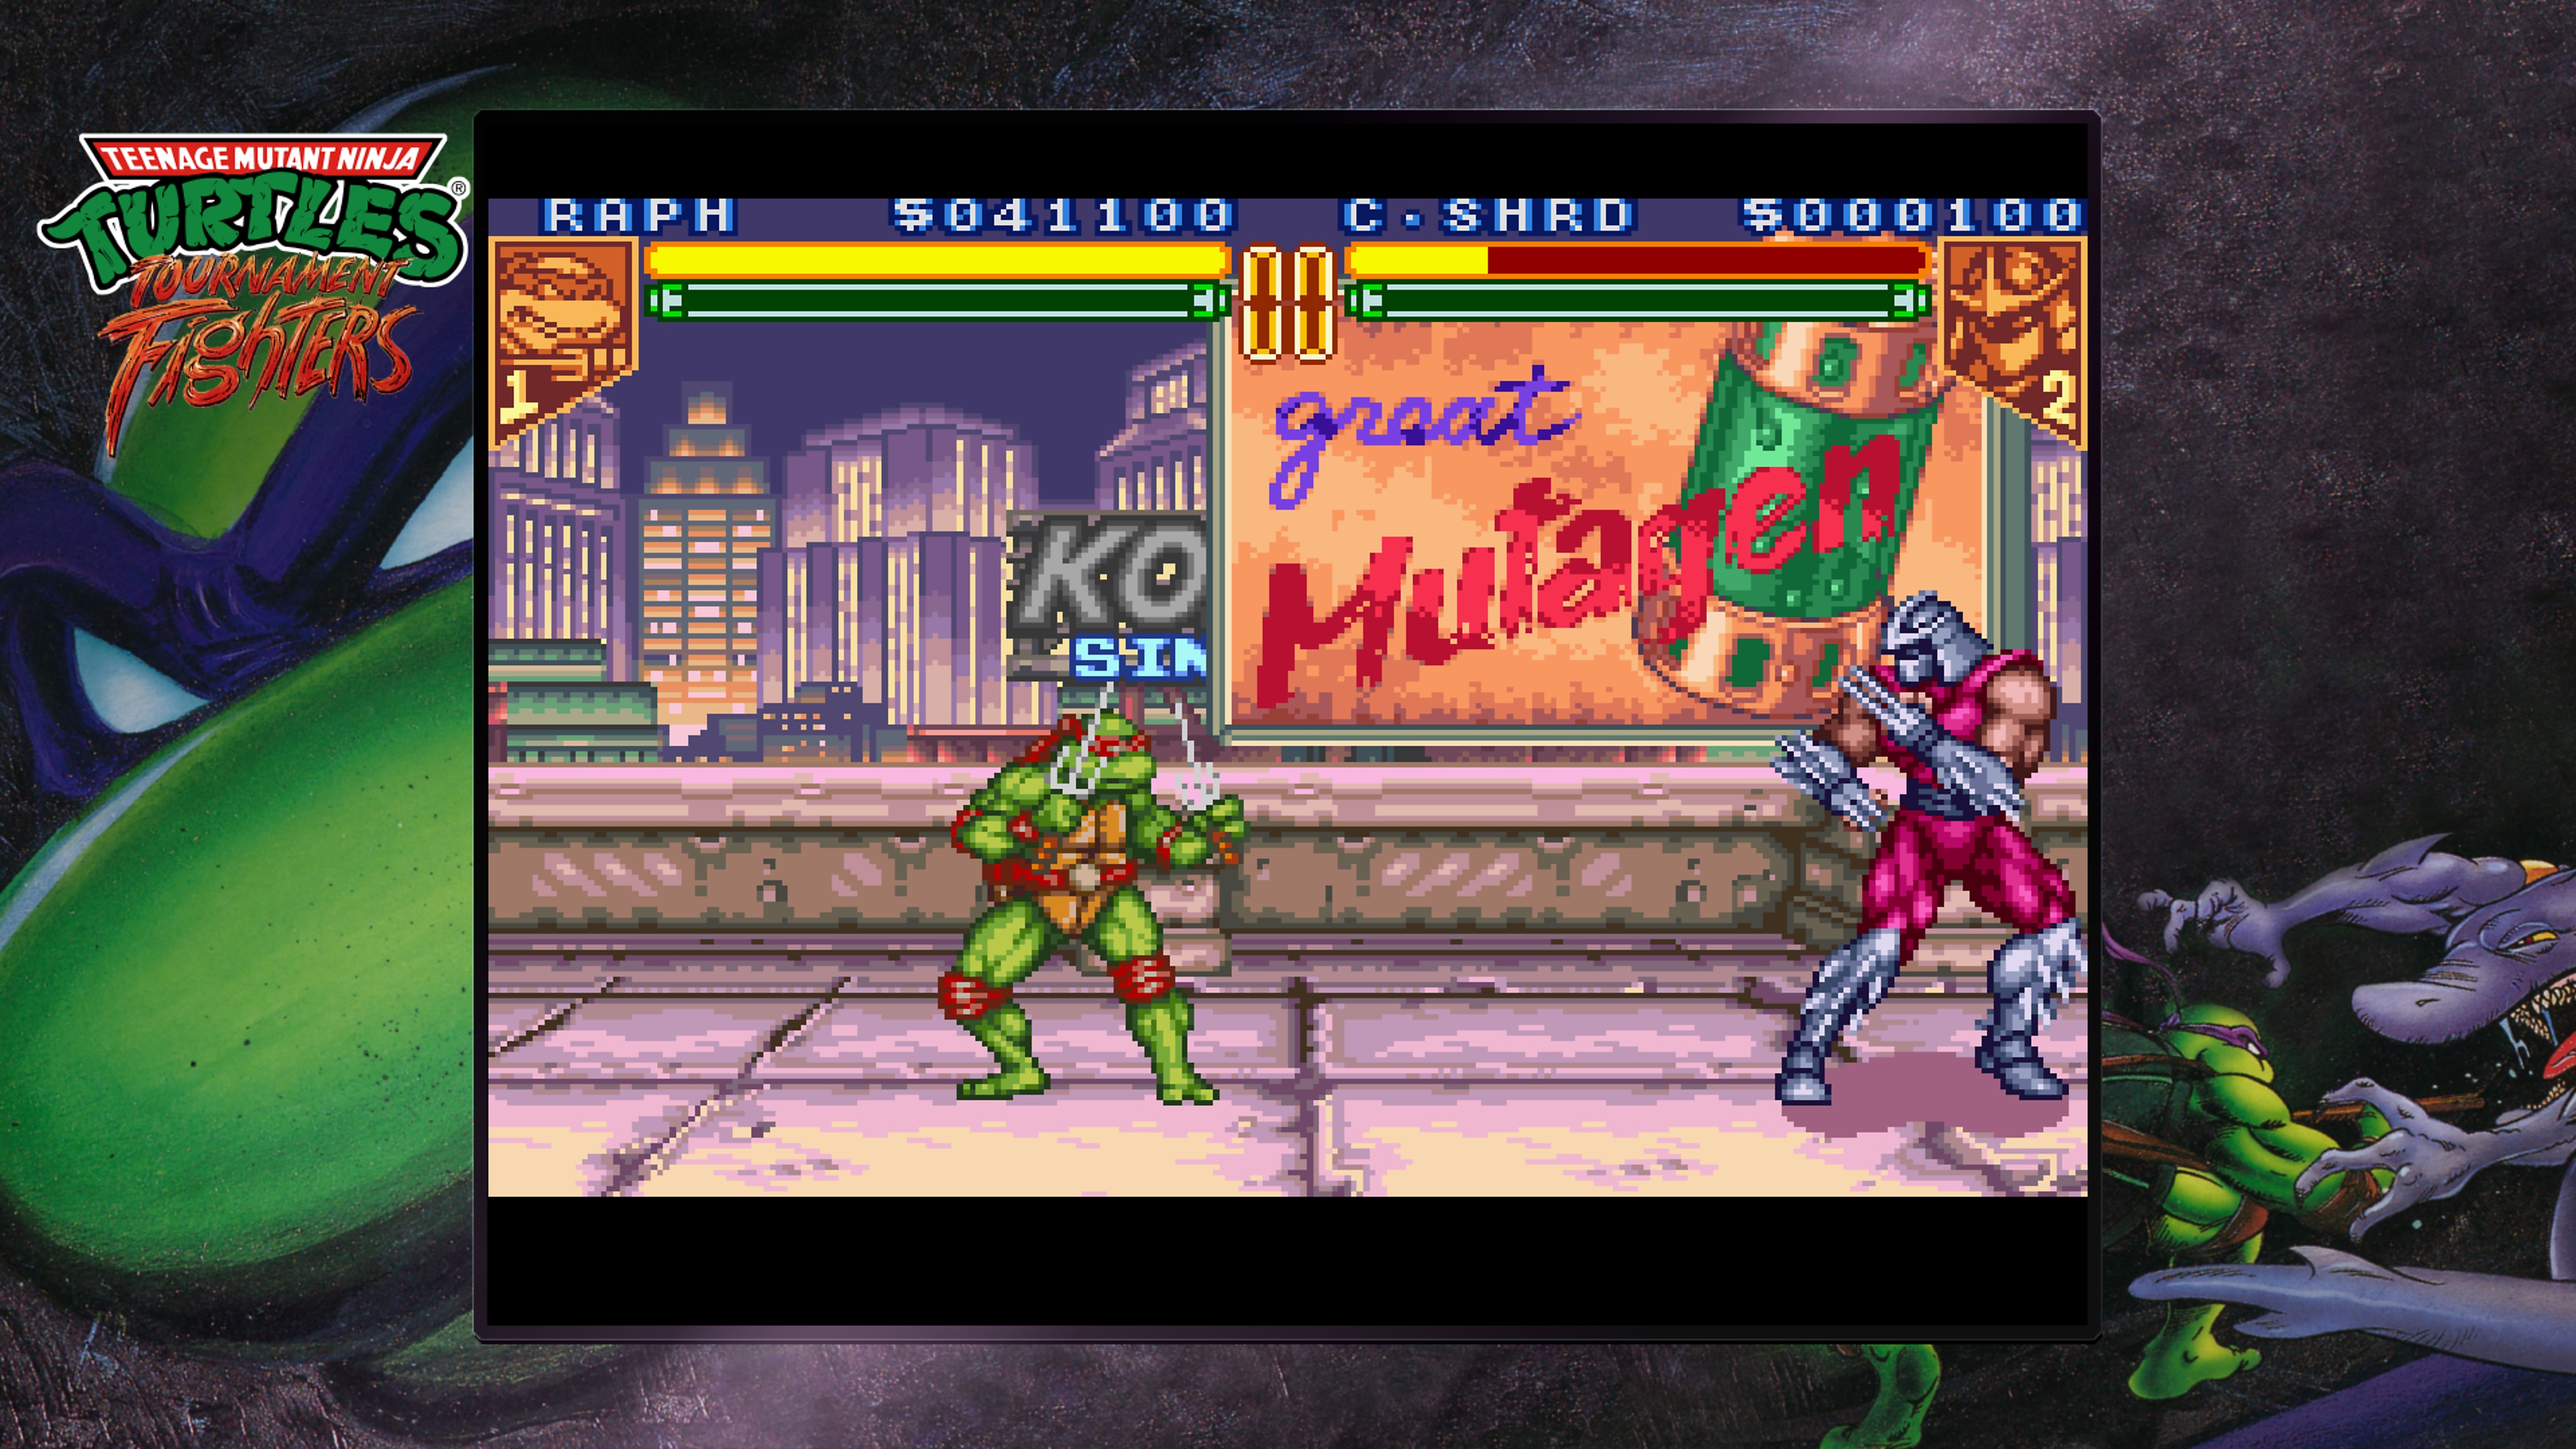 Teenage Mutant Ninja Turtles Collection – Tournament Fighters skærmbillede af Raphael, der kæmper mod Shredder på toppen af en bygning